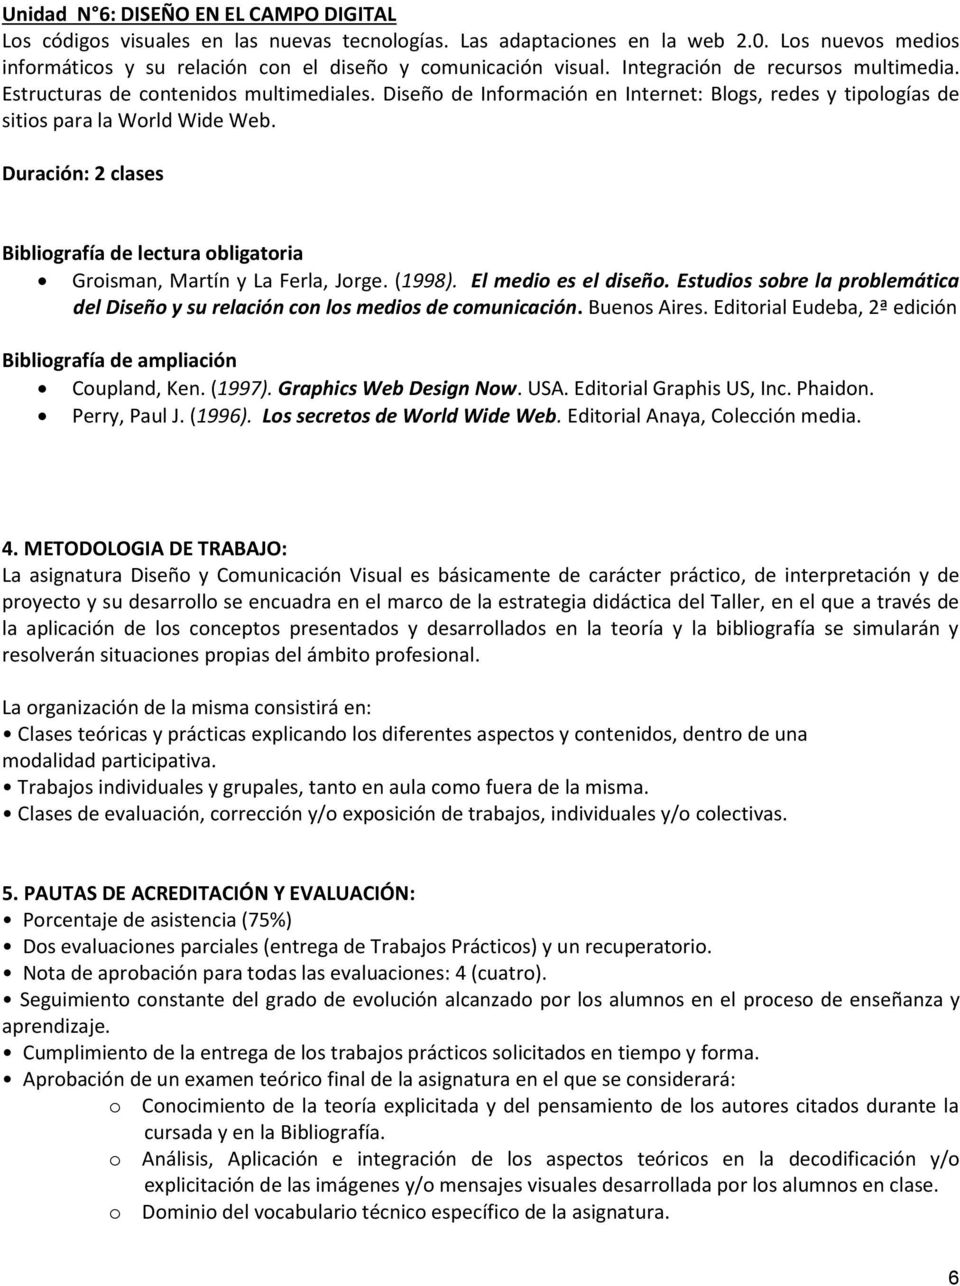 Duración: 2 clases Groisman, Martín y La Ferla, Jorge. (1998). El medio es el diseño. Estudios sobre la problemática del Diseño y su relación con los medios de comunicación. Buenos Aires.